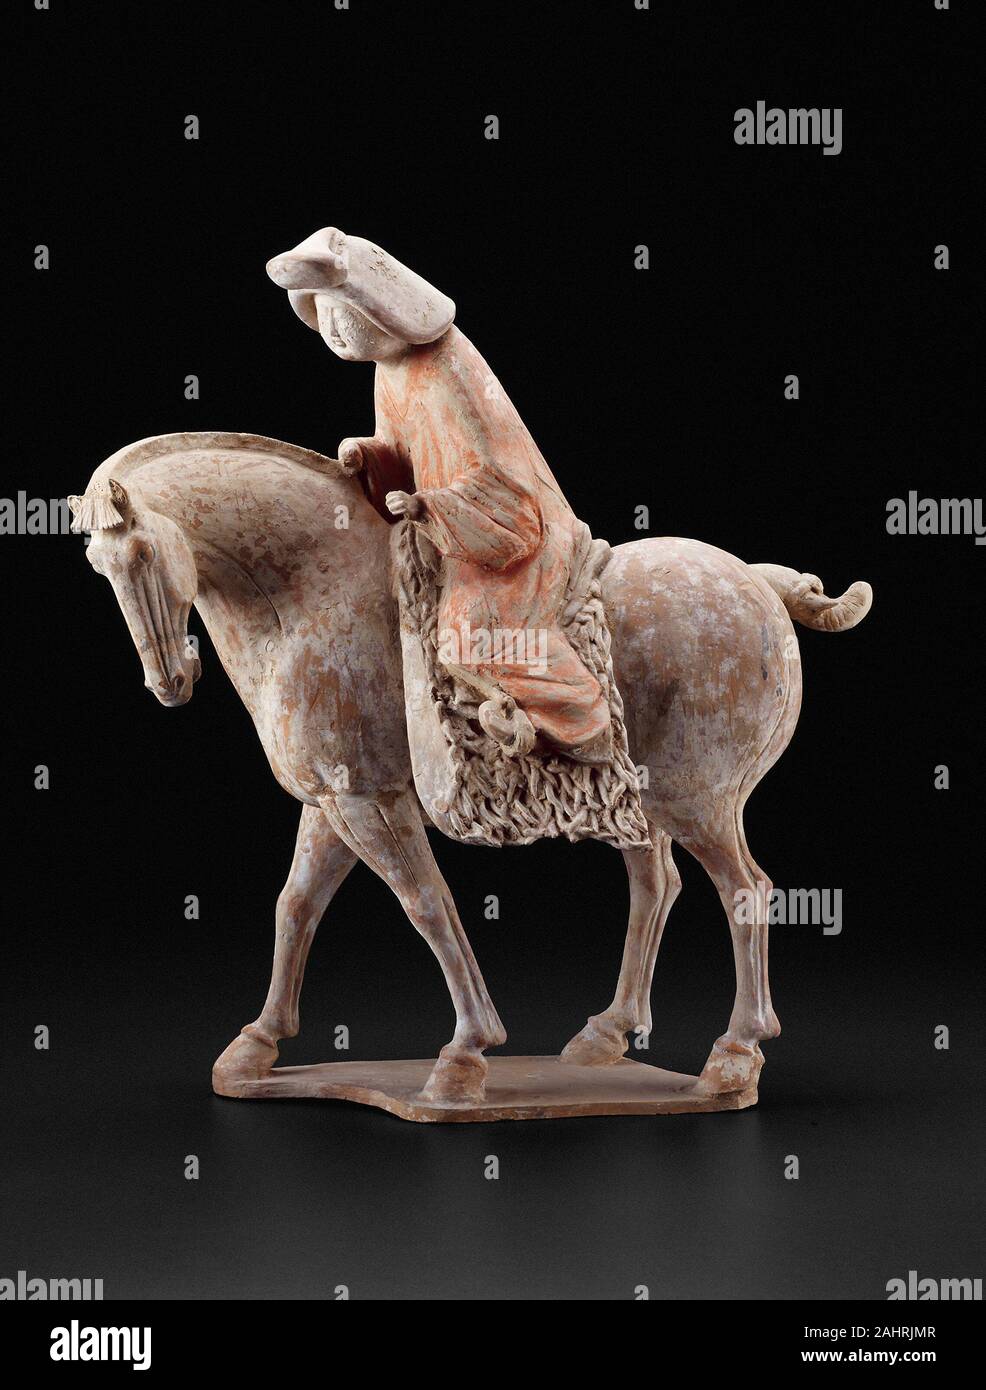 Equestrienne. 725 AD - 750 AD. China. Steingut mit mehrfarbigem Pigmente Chinesischen keramische Figuren ausschließlich für die Beerdigung, oft sehr anschaulich die Moden und Freizeitaktivitäten Ihrer adeligen Besitzer evozieren. Diese Abbildung sensibel fängt einen ruhigen Moment im Leben eines matronly equestrienne, der sanft führt ihr Pferd. Kräftiger Hals des Tieres und Flanken, lange Beine, getrimmt Mähne, und dekorativ Schwanz gebunden sind, verfügt über eine Besonderheit der stattlichen Rassen, die von der nordwestlichen Grenzen des Imperiums zu China sowie von Websites gebracht wurden als weit nach Westen als der Aralsee. Vorsichtig Stockfoto